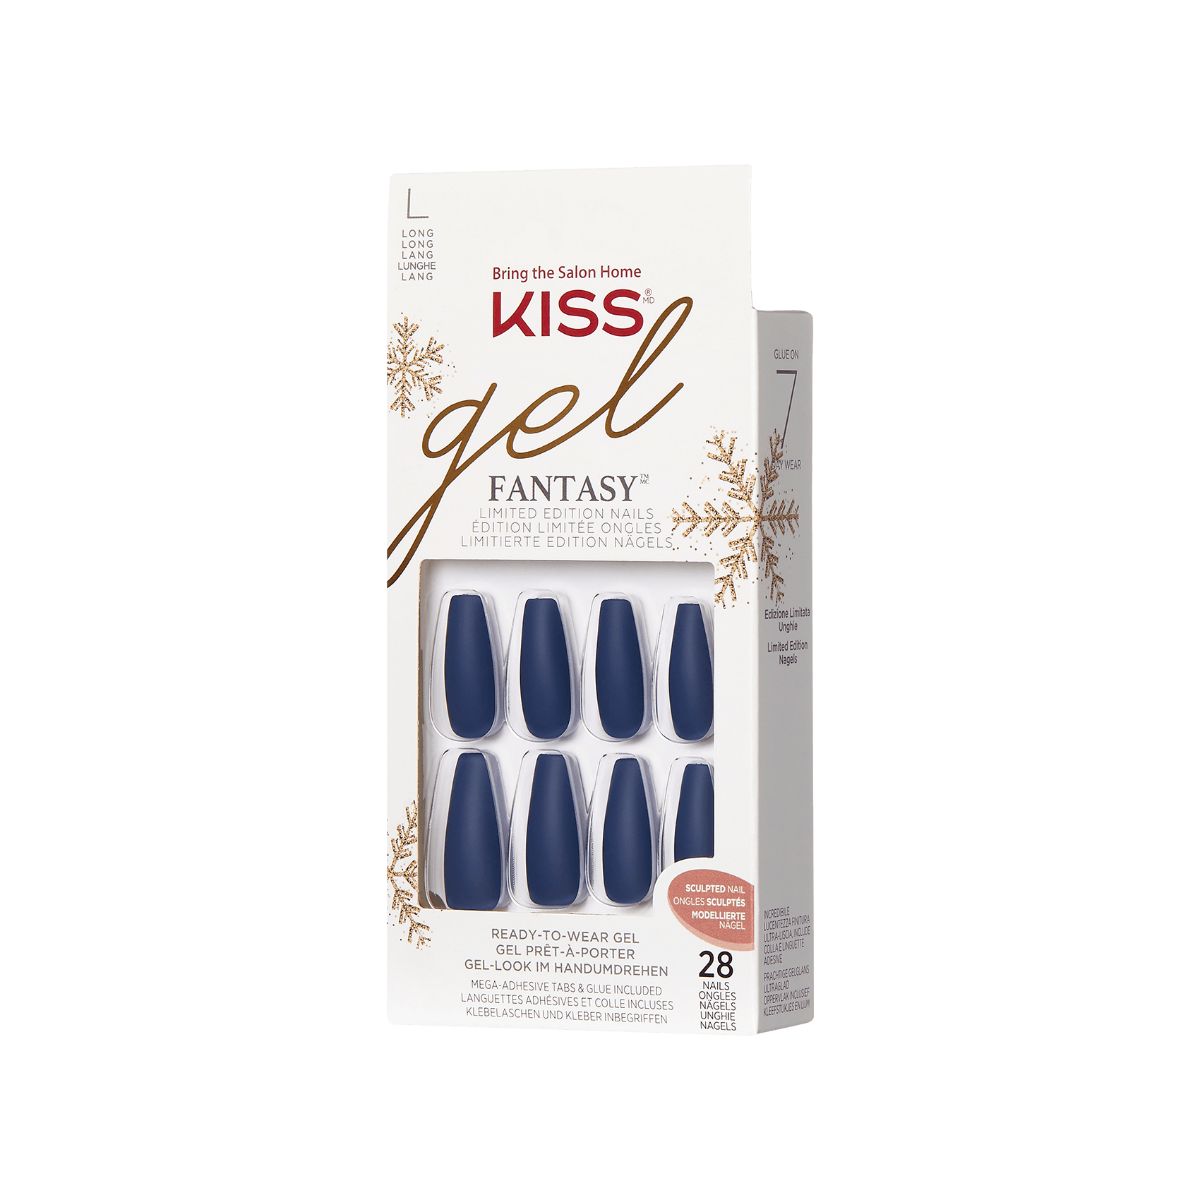 KISS Gel Fantasy Limited Edition Sculpted Holiday Nails - Inspiration | KISS, imPRESS, JOAH